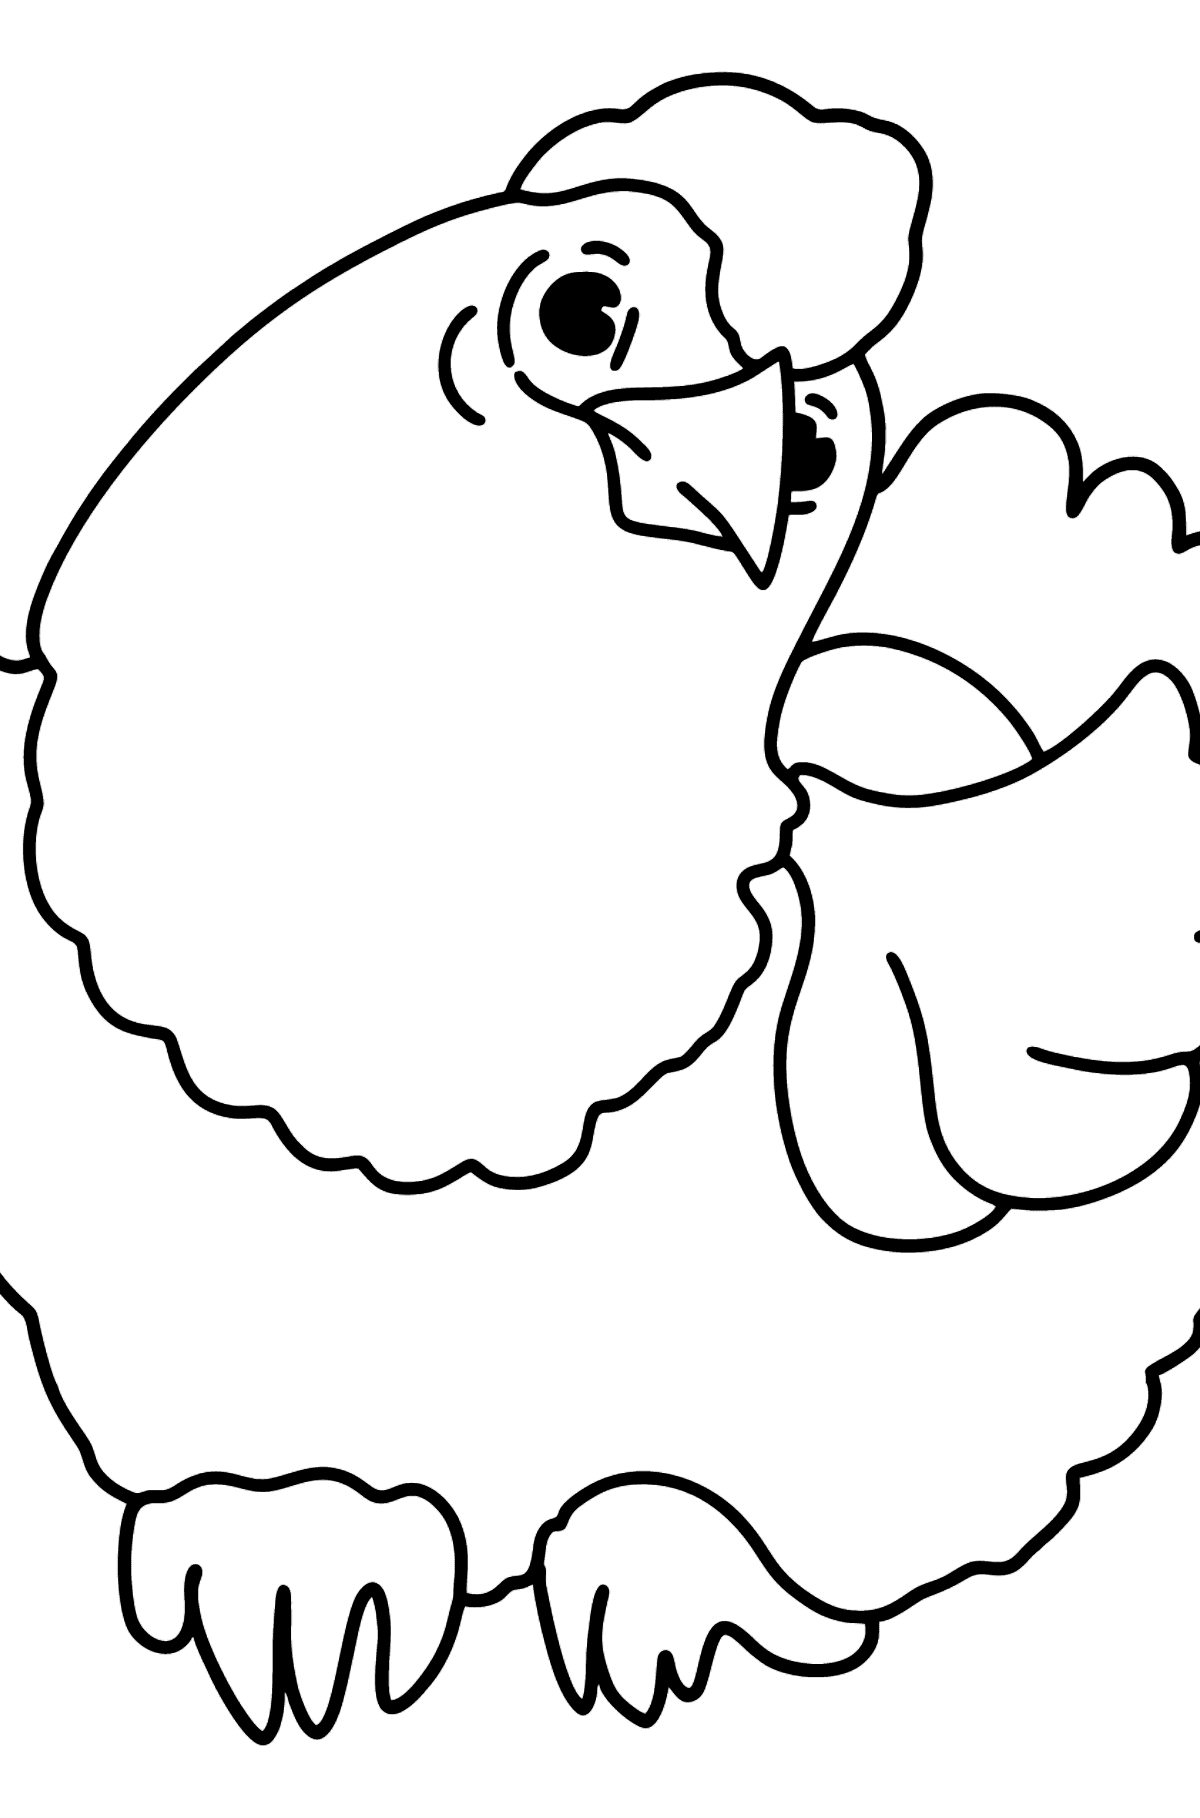 Desenho para colorir simples com uma galinha - Imagens para Colorir para Crianças